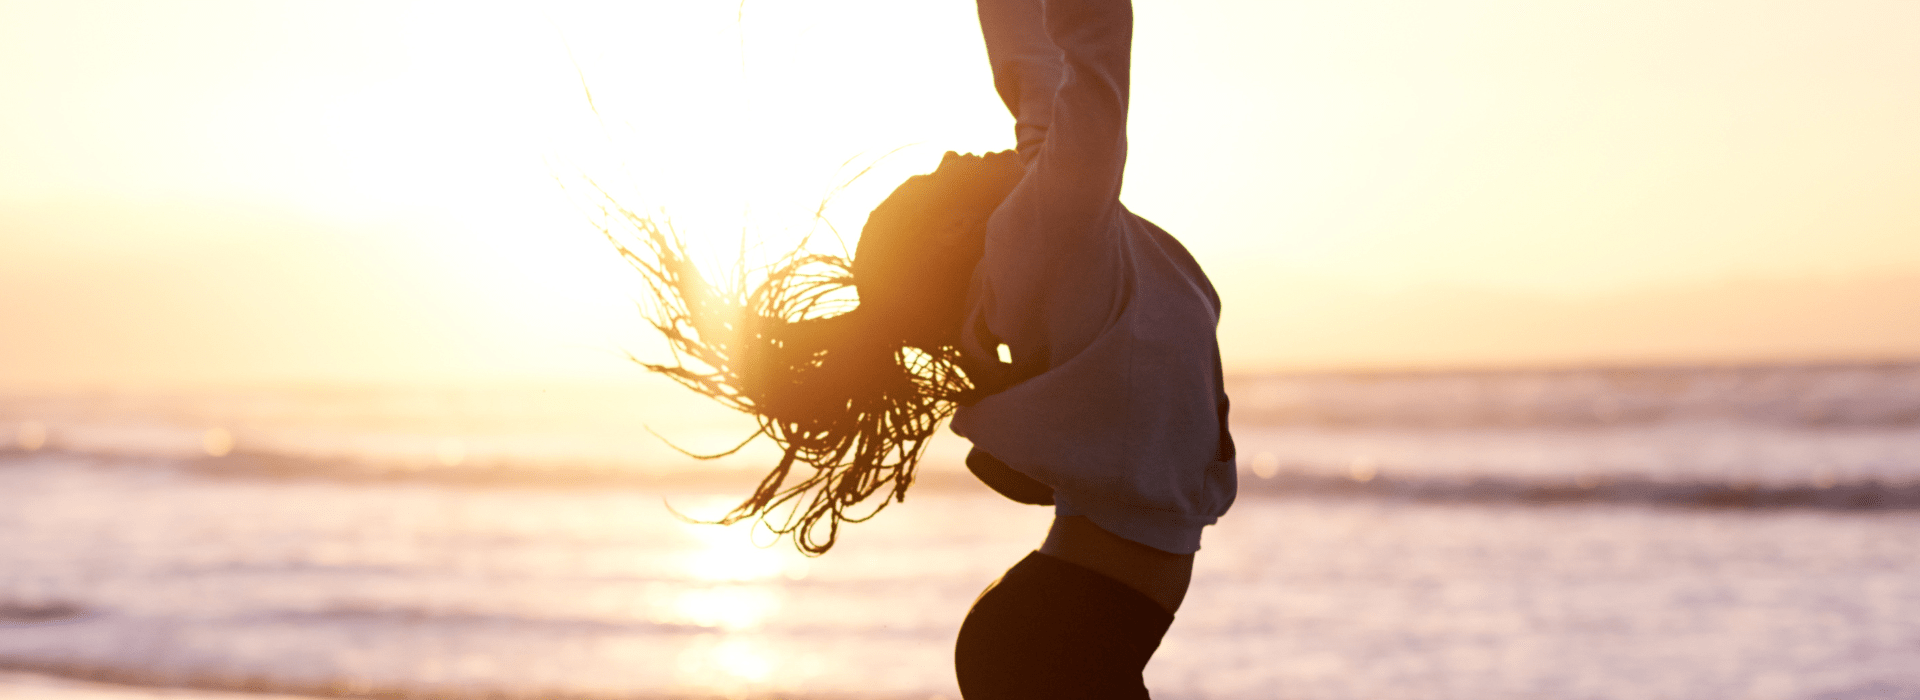 Une femme qui saute de joie sur la plage avec un coucher de soleil.